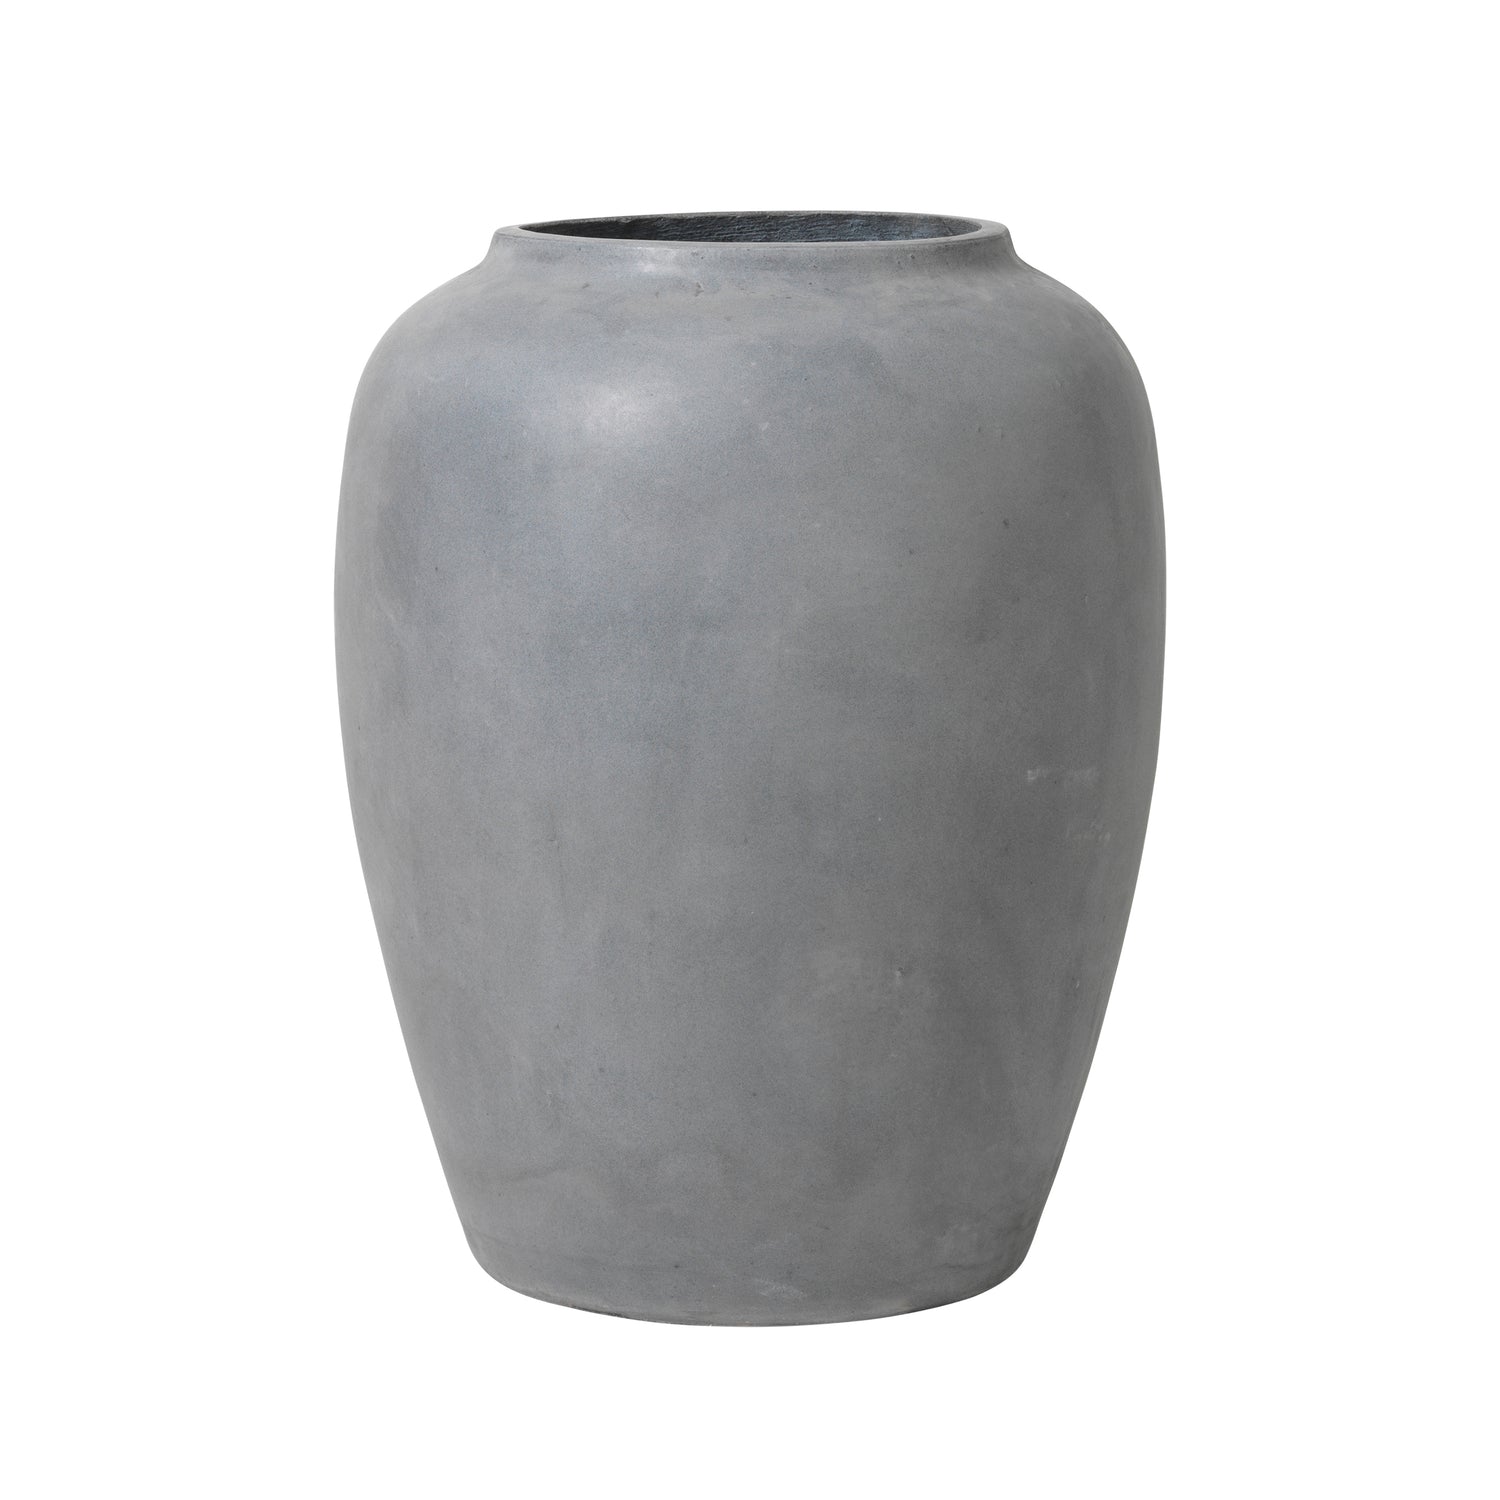  Broste Copenhagen-Broste Copenhagen Ray Floor Vase in Charcoal-Grey 957 